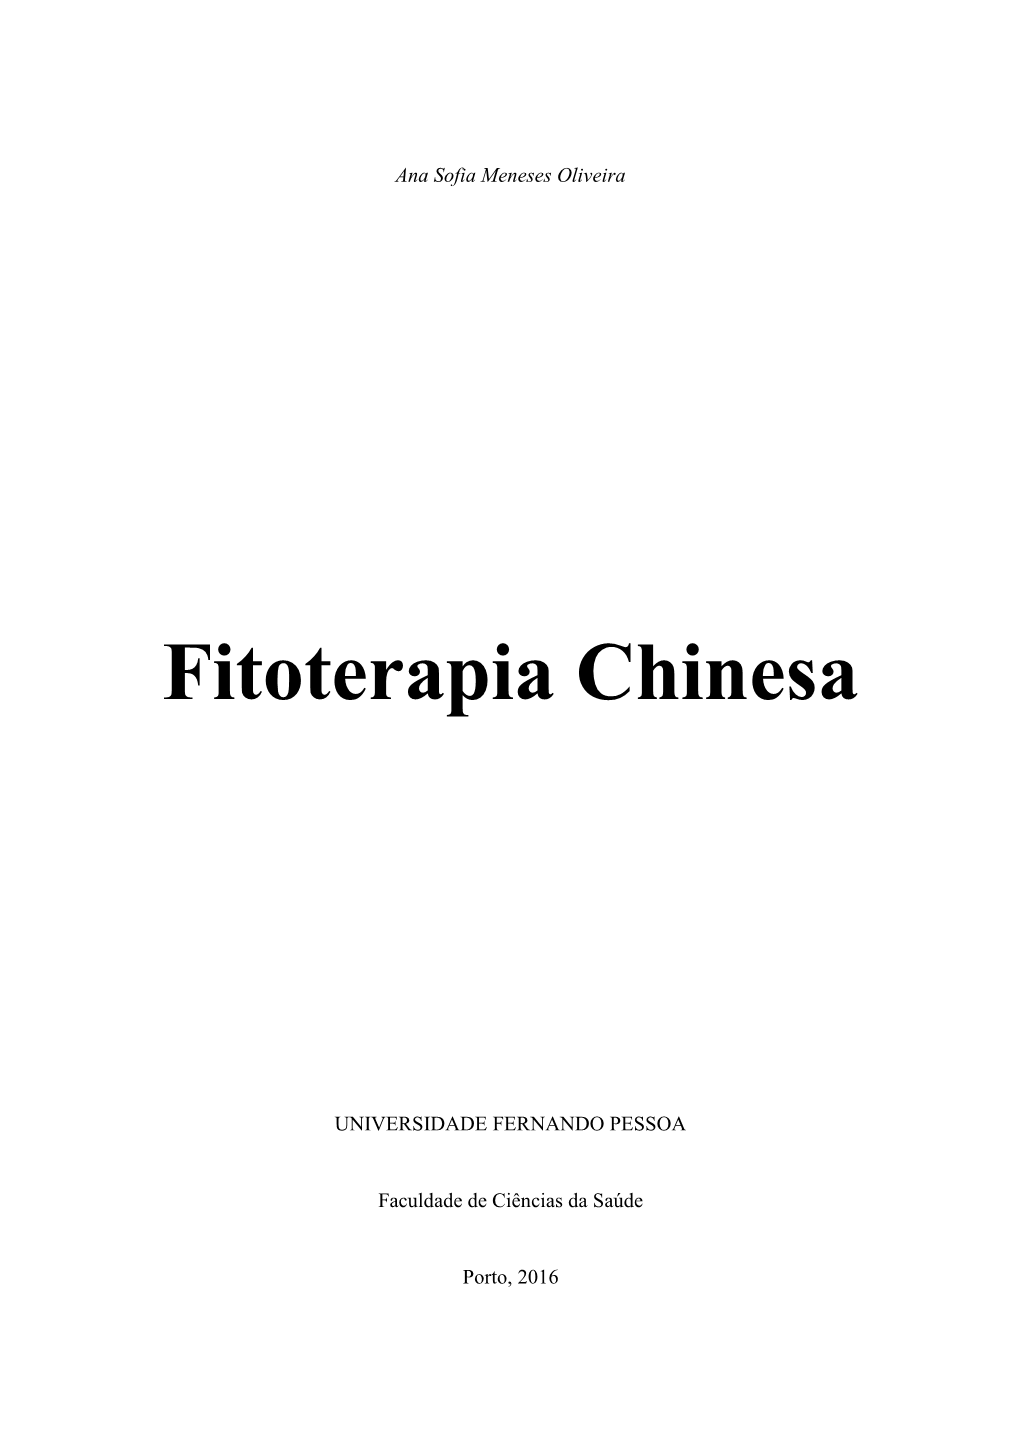 Fitoterapia Chinesa